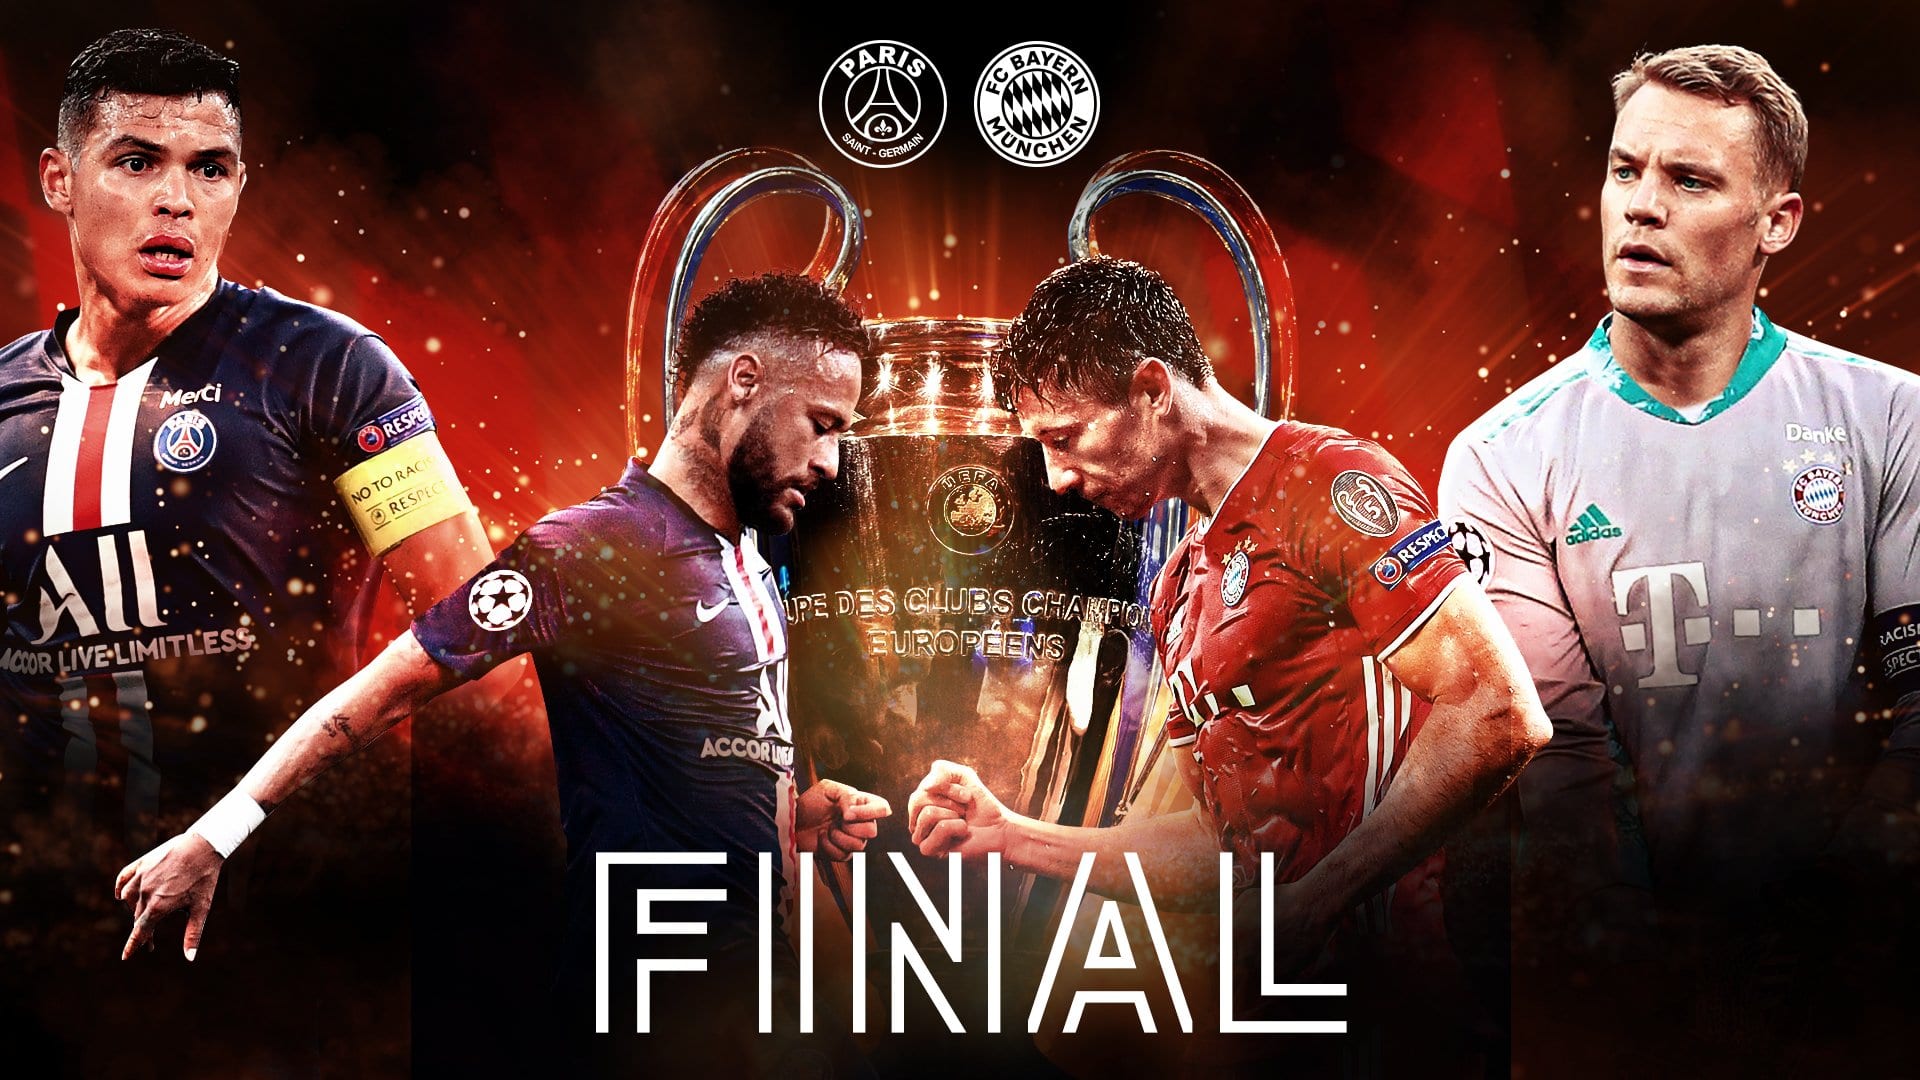 Live 23 agosto 2020: il giorno della finale di Champions League con Paris Saint-Germain vs Bayern Monaco. In prime time su Canale5 e Sky Sport